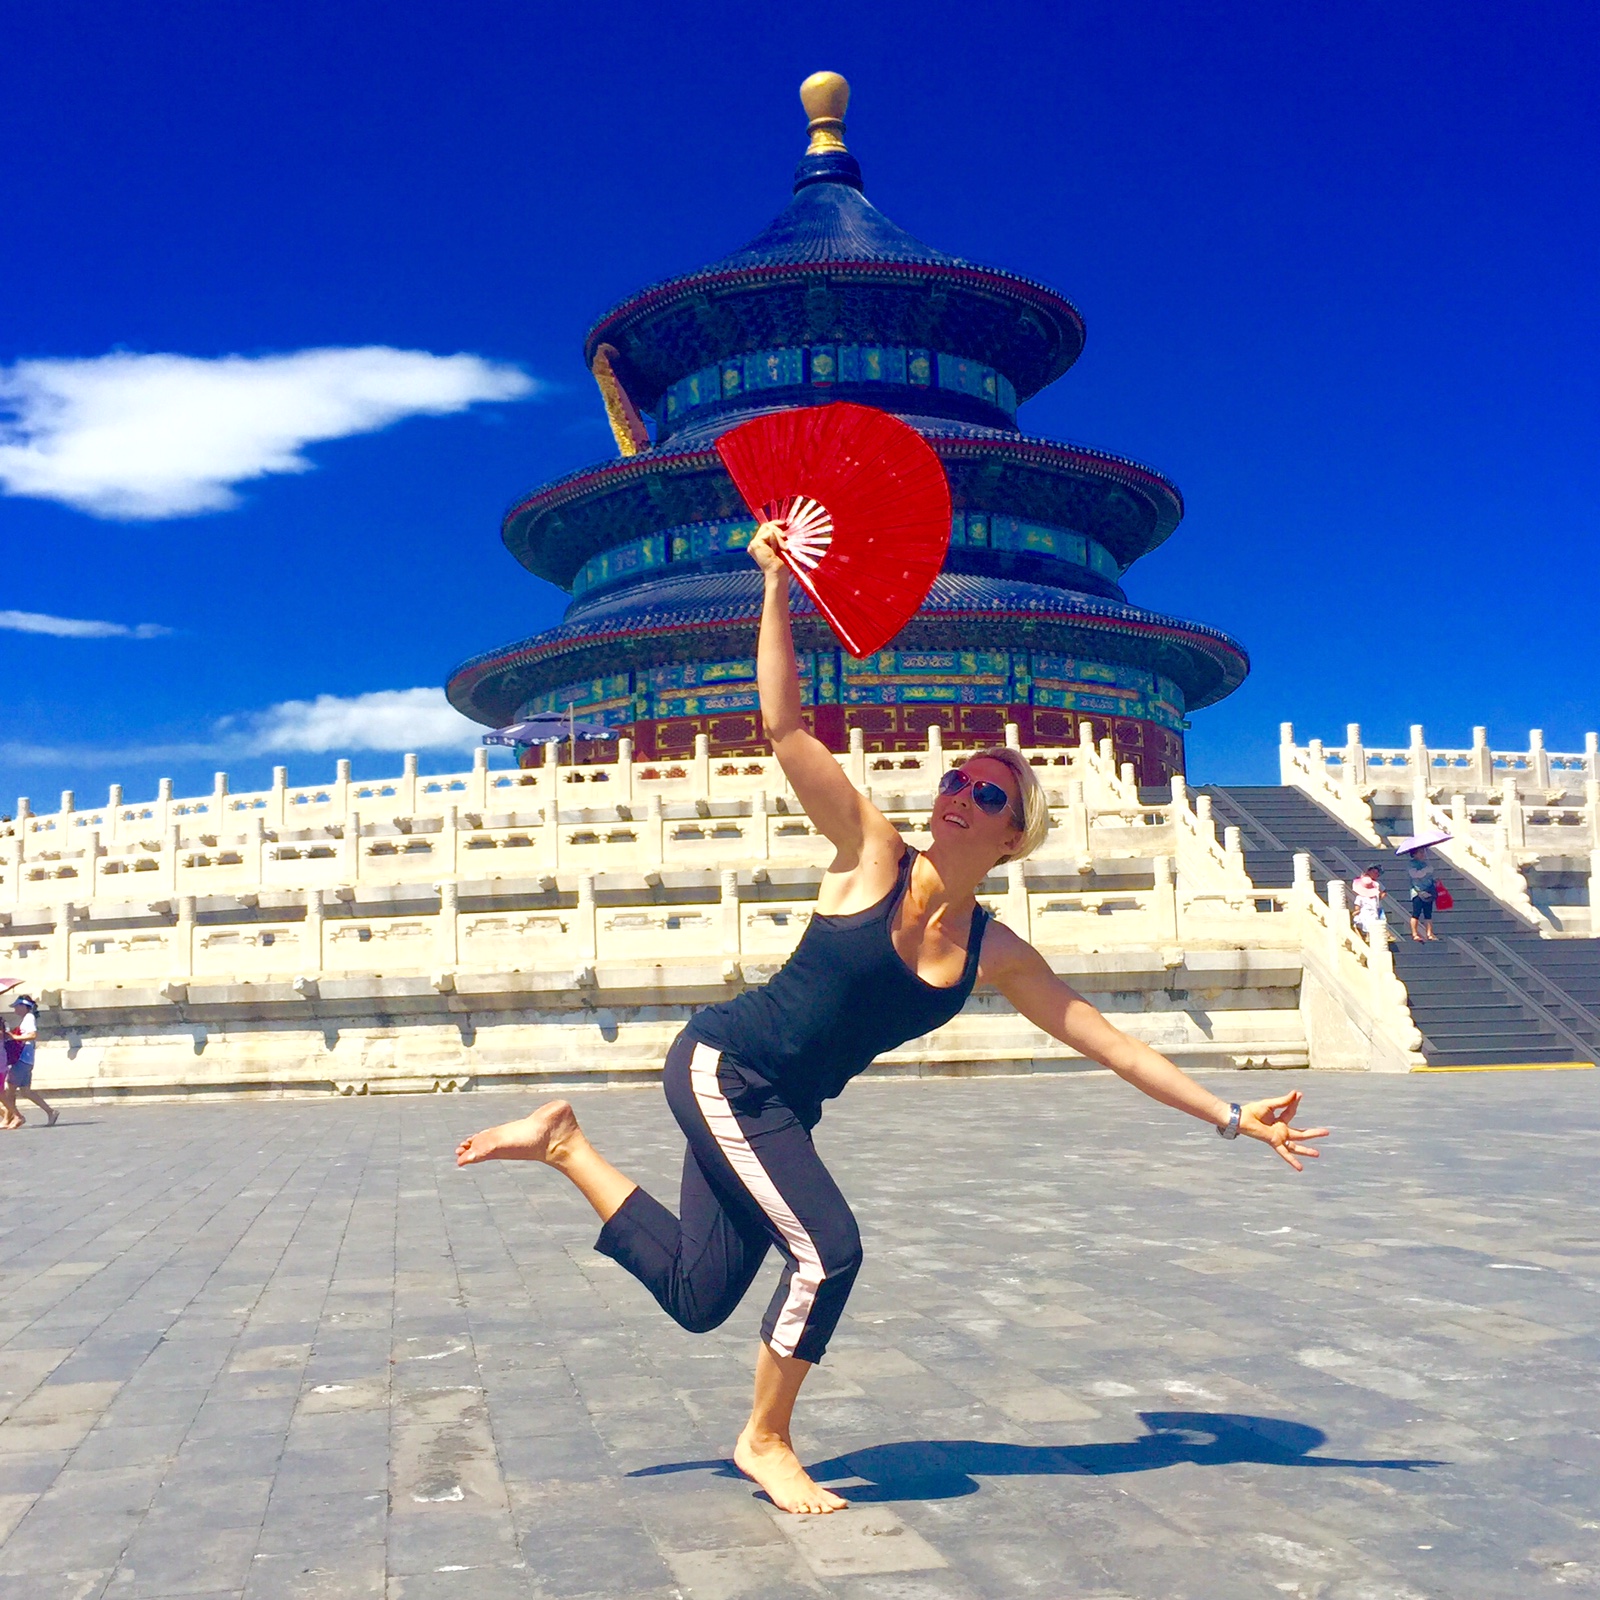 Temple of Heaven, Beijing (must visit)